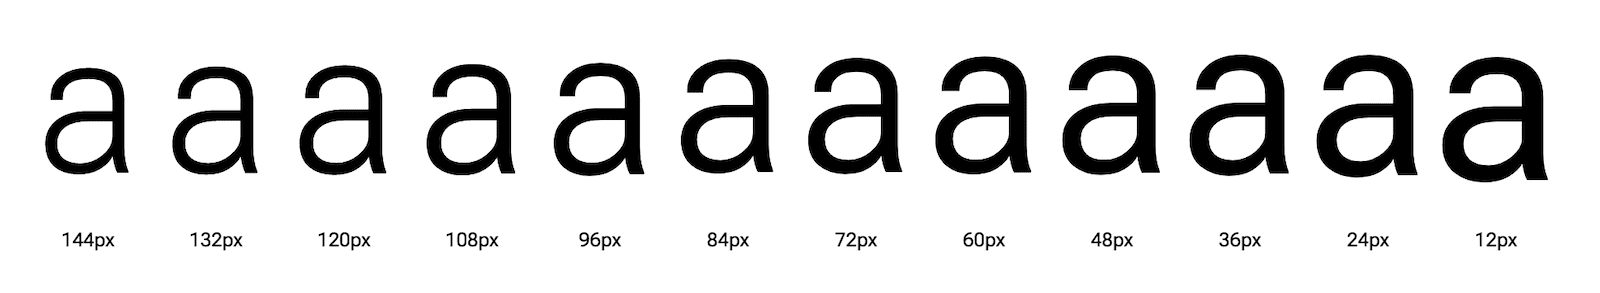 حرف "a" در اندازه های نوری مختلف نشان داده شده است